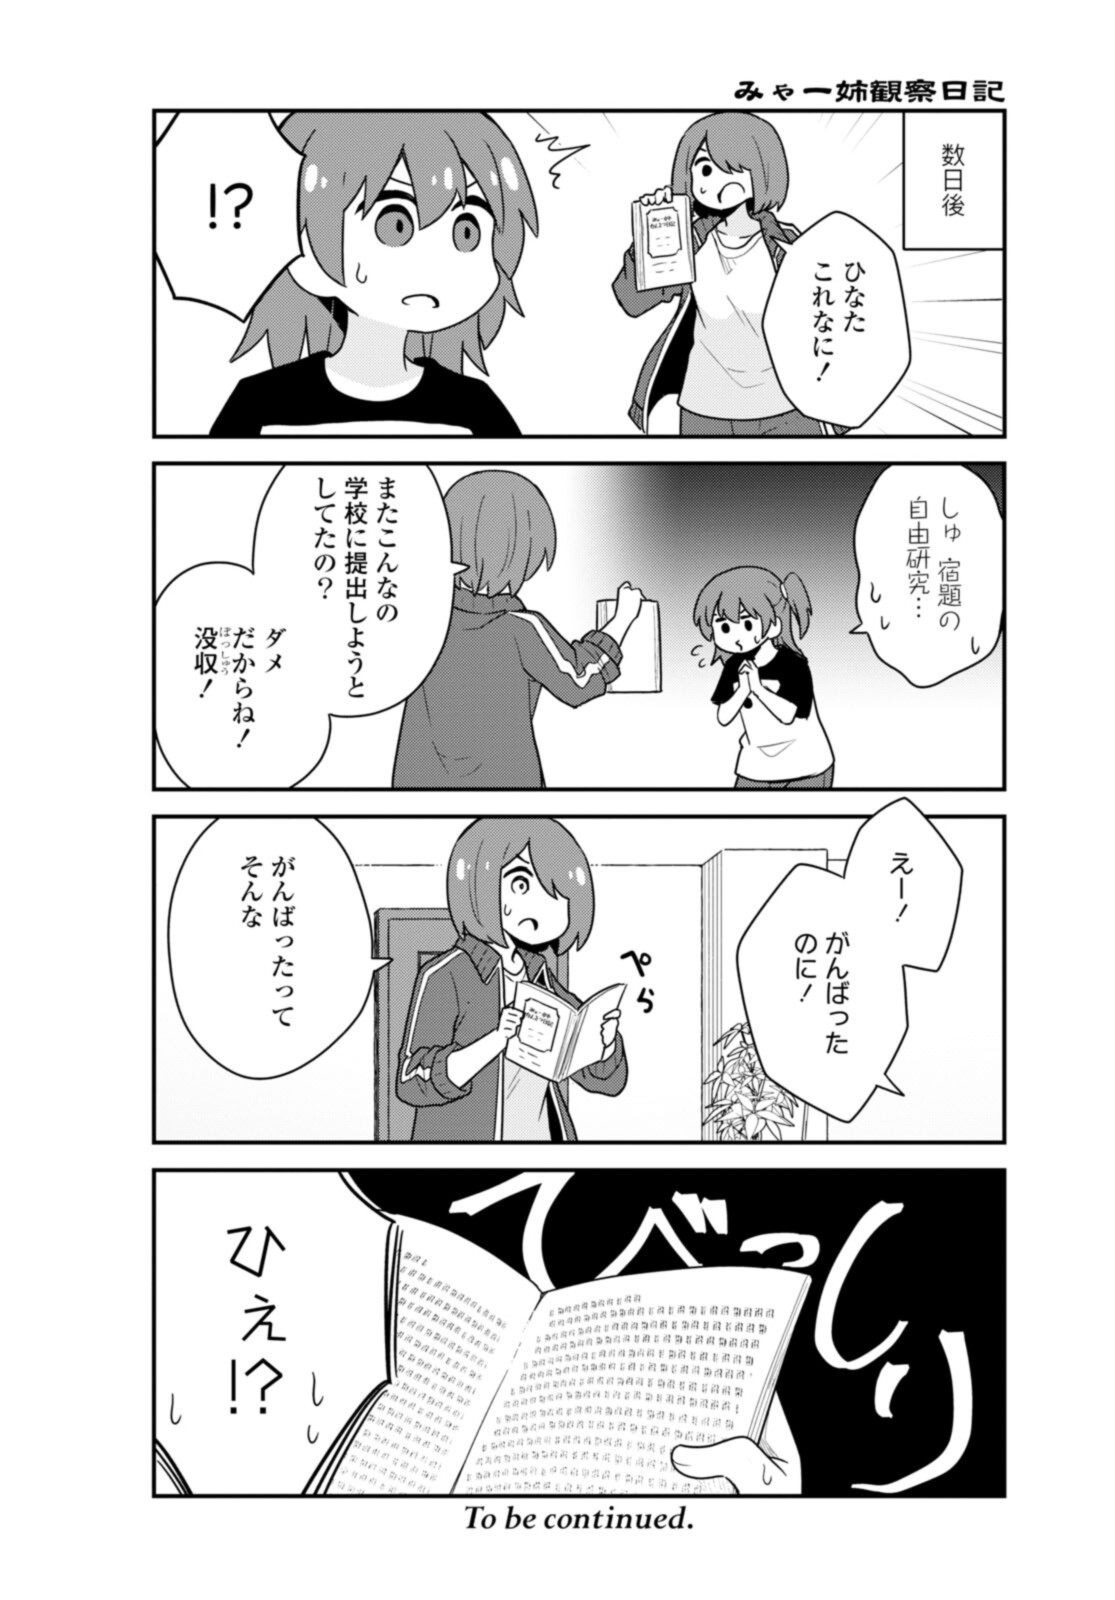 Watashi ni Tenshi ga Maiorita! - Chapter 90 - Page 14